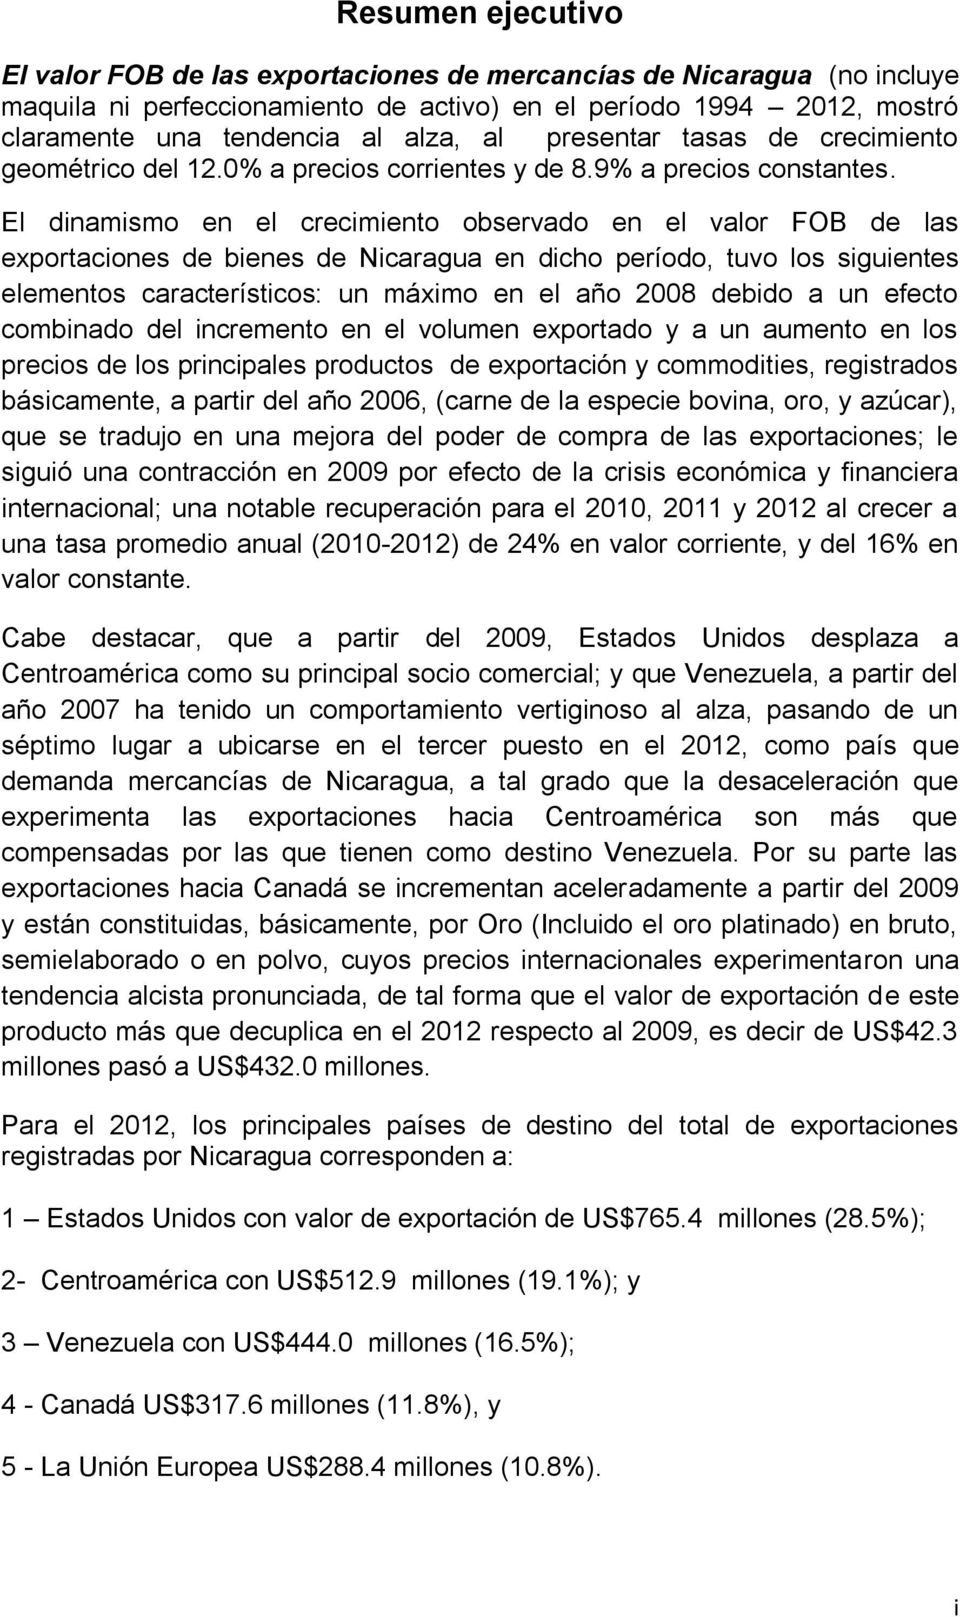 El dinamismo en el crecimiento observado en el valor FOB de las exportaciones de bienes de Nicaragua en dicho período, tuvo los siguientes elementos característicos: un máximo en el año 2008 debido a